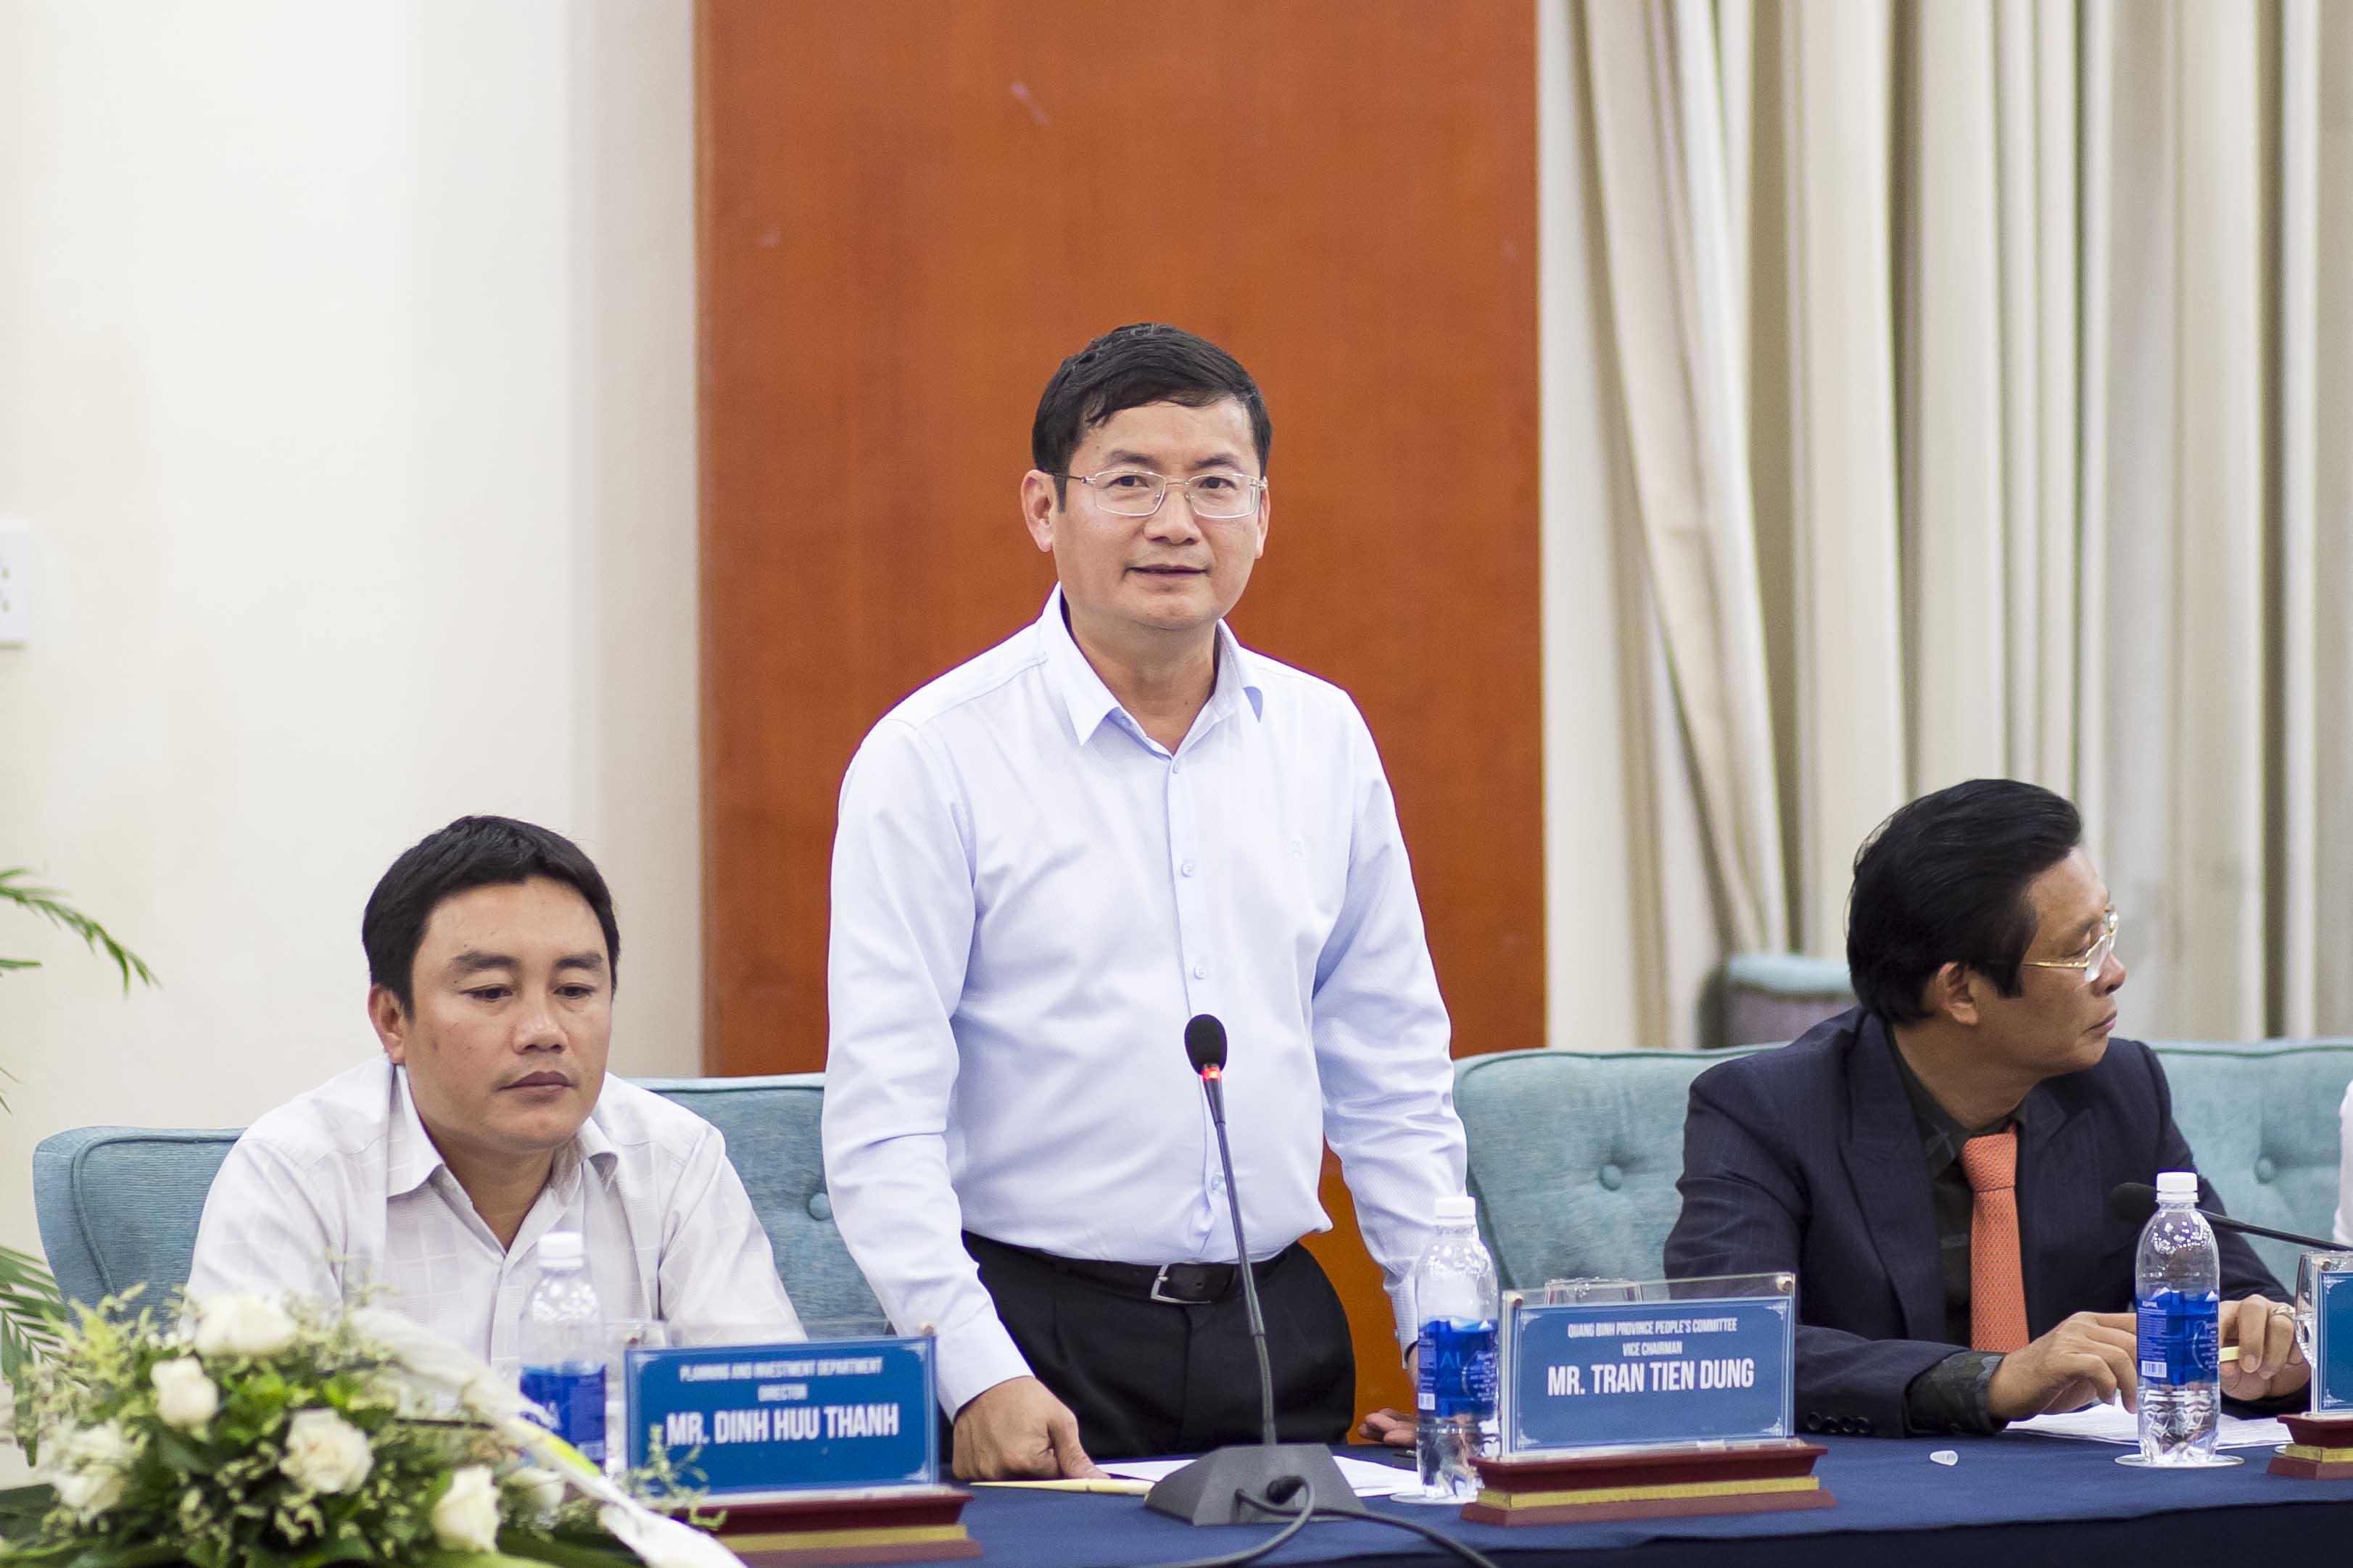 Phó chủ tịch UBND tỉnh Quảng Bình Trần Tiến Dũng